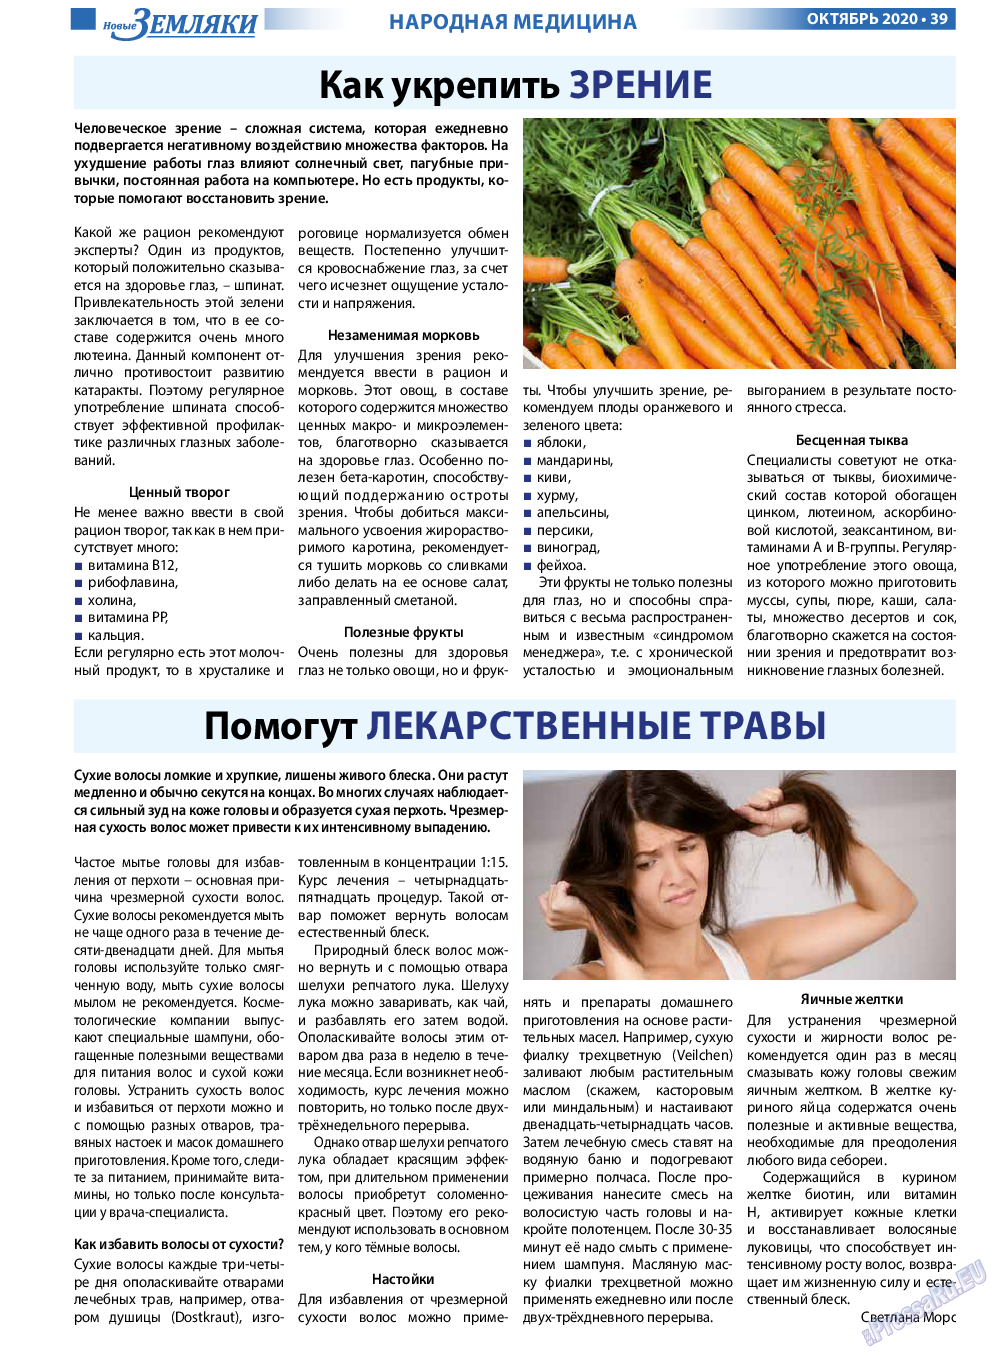 Новые Земляки, газета. 2020 №10 стр.39